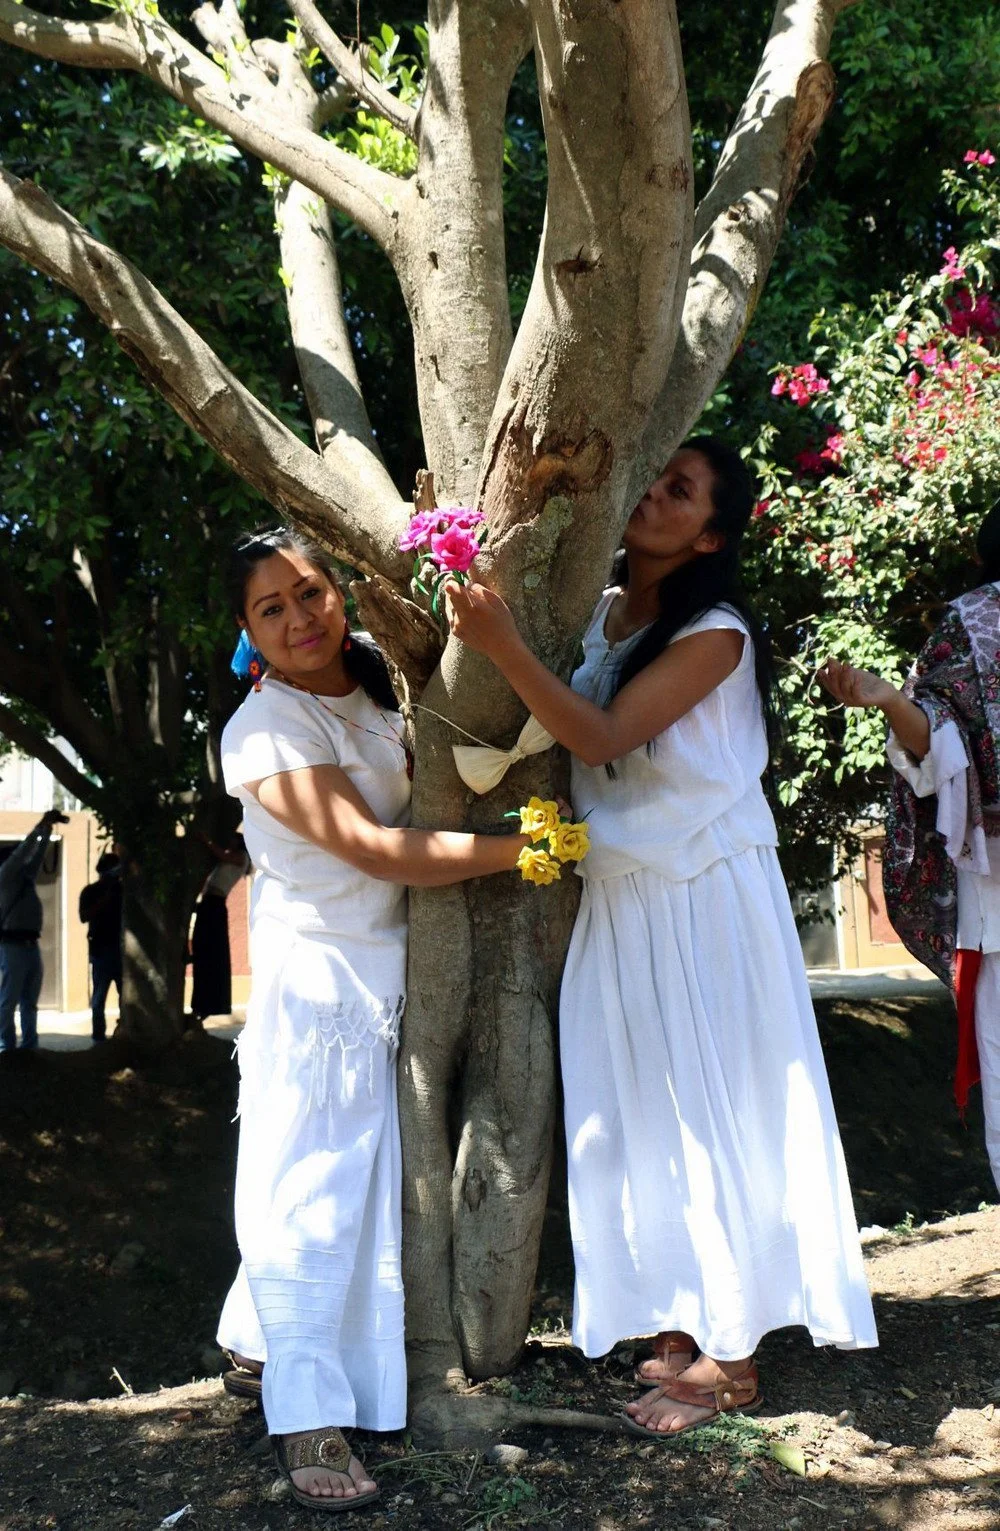 Мексиканки устроили протест и вышли замуж за деревья: фото свадебной церемонии - фото 374007